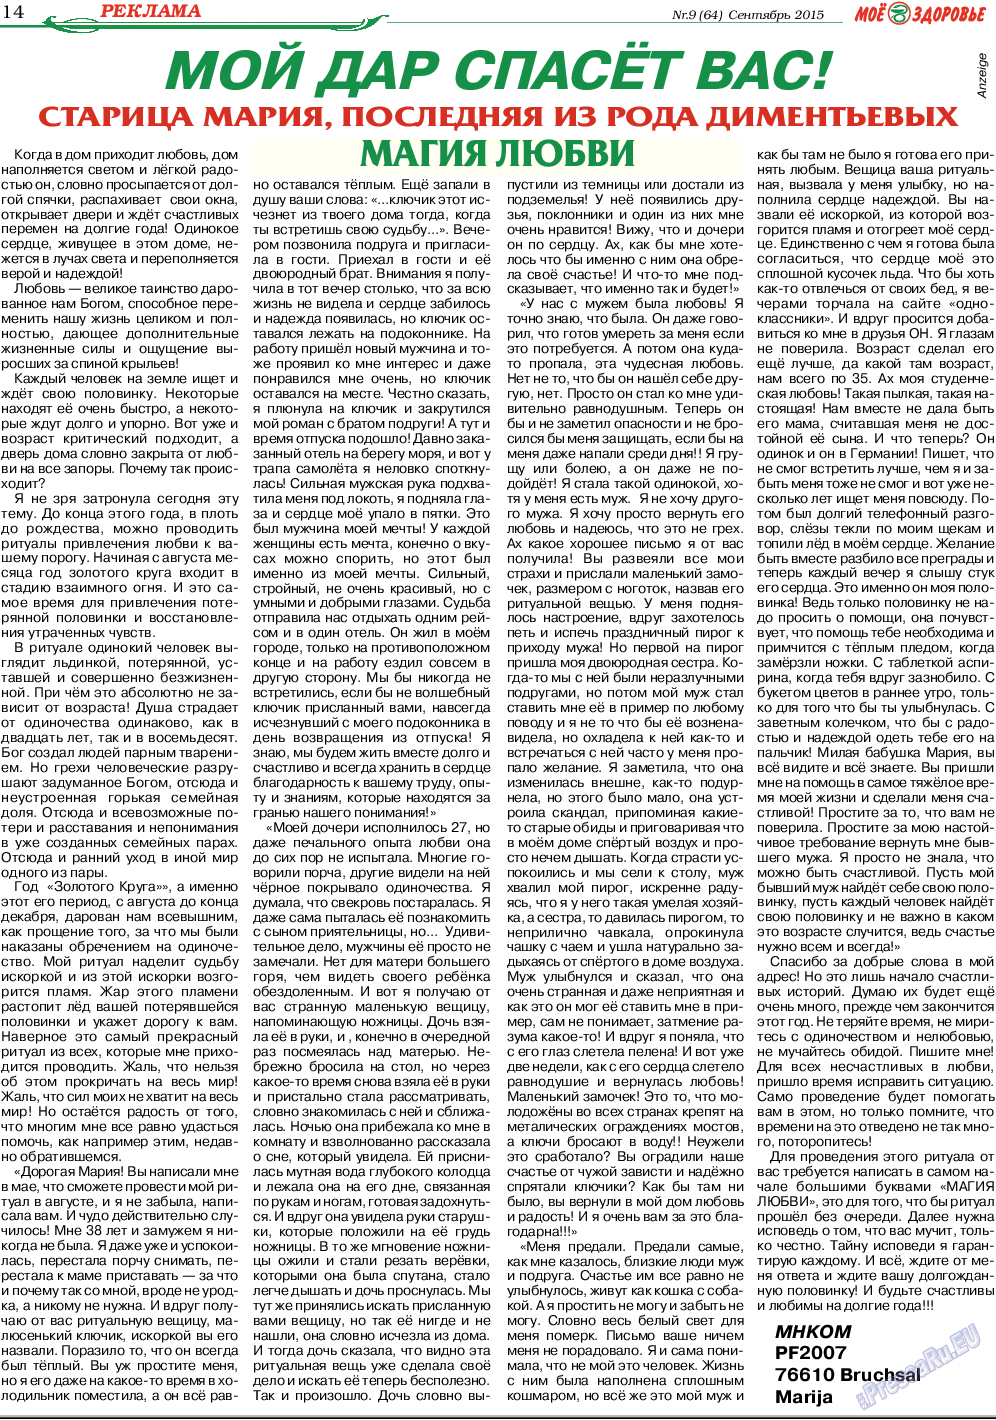 Кругозор, газета. 2015 №9 стр.14